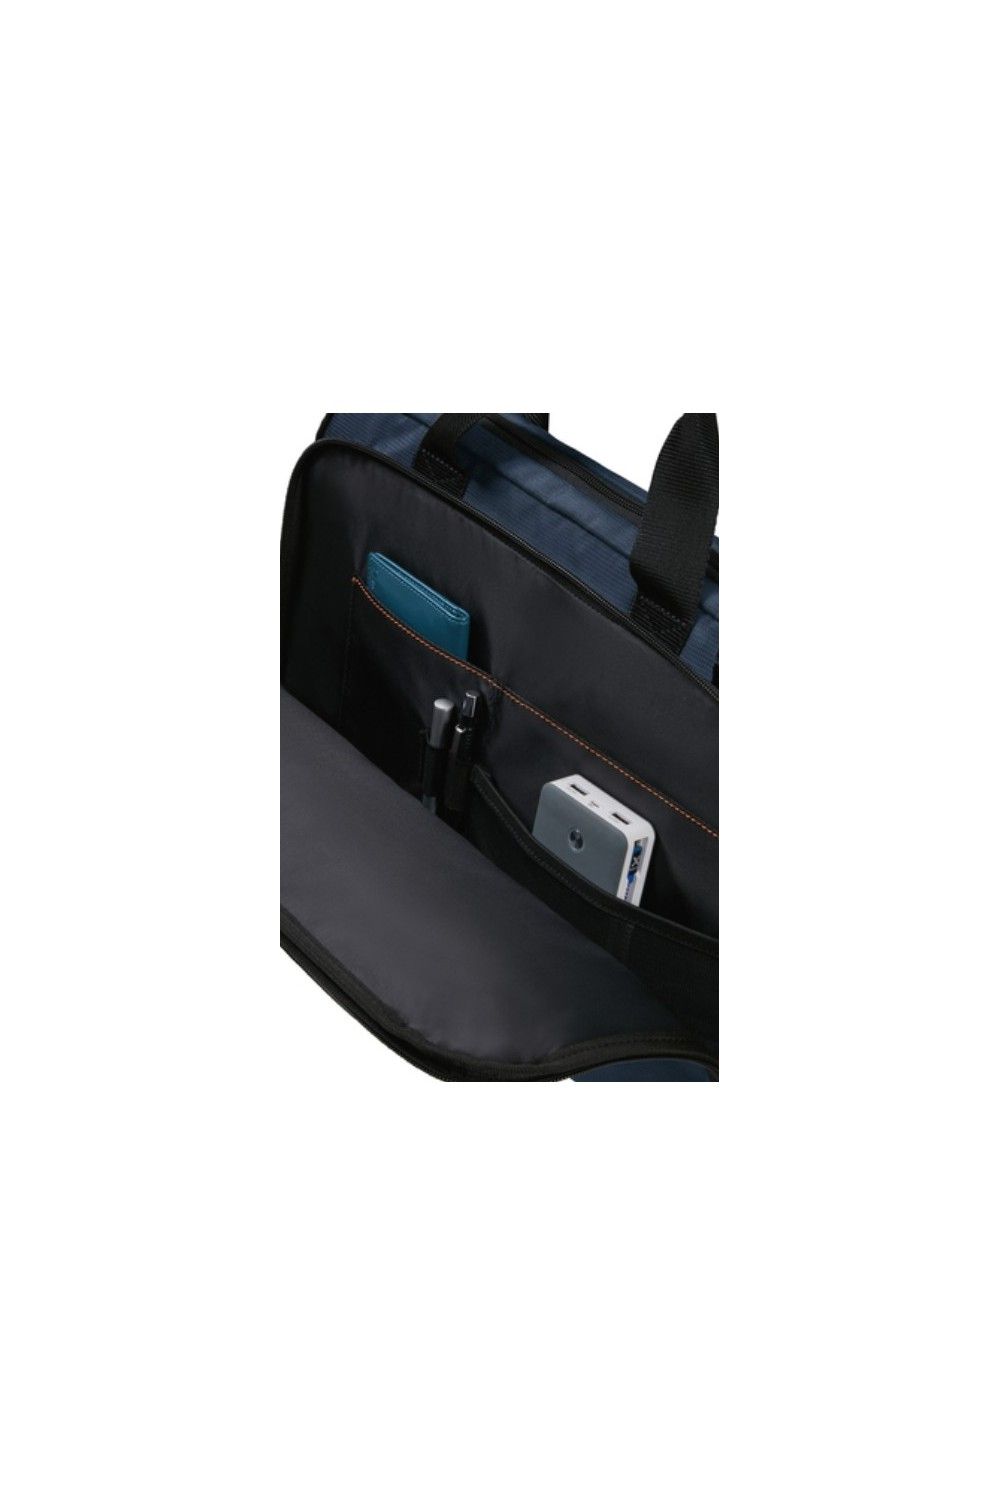 Samsonite sac d'ordinateur portable Network 4 15 pouces bleu